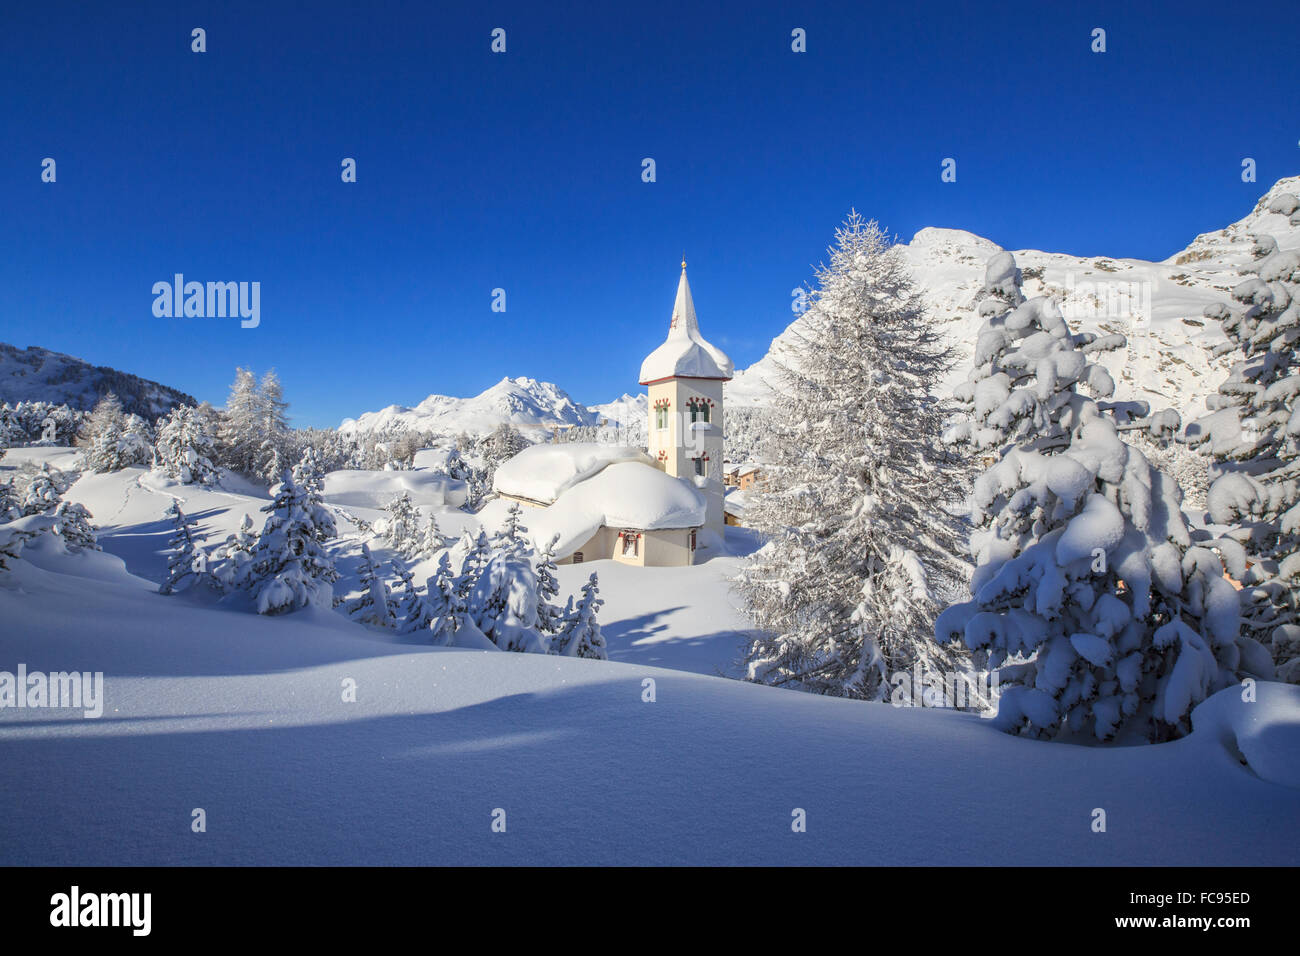 Le soleil d'hiver illumine le paysage de neige et de l'église typique, Maloja, Engadine, Canton des Grisons, Suisse Banque D'Images